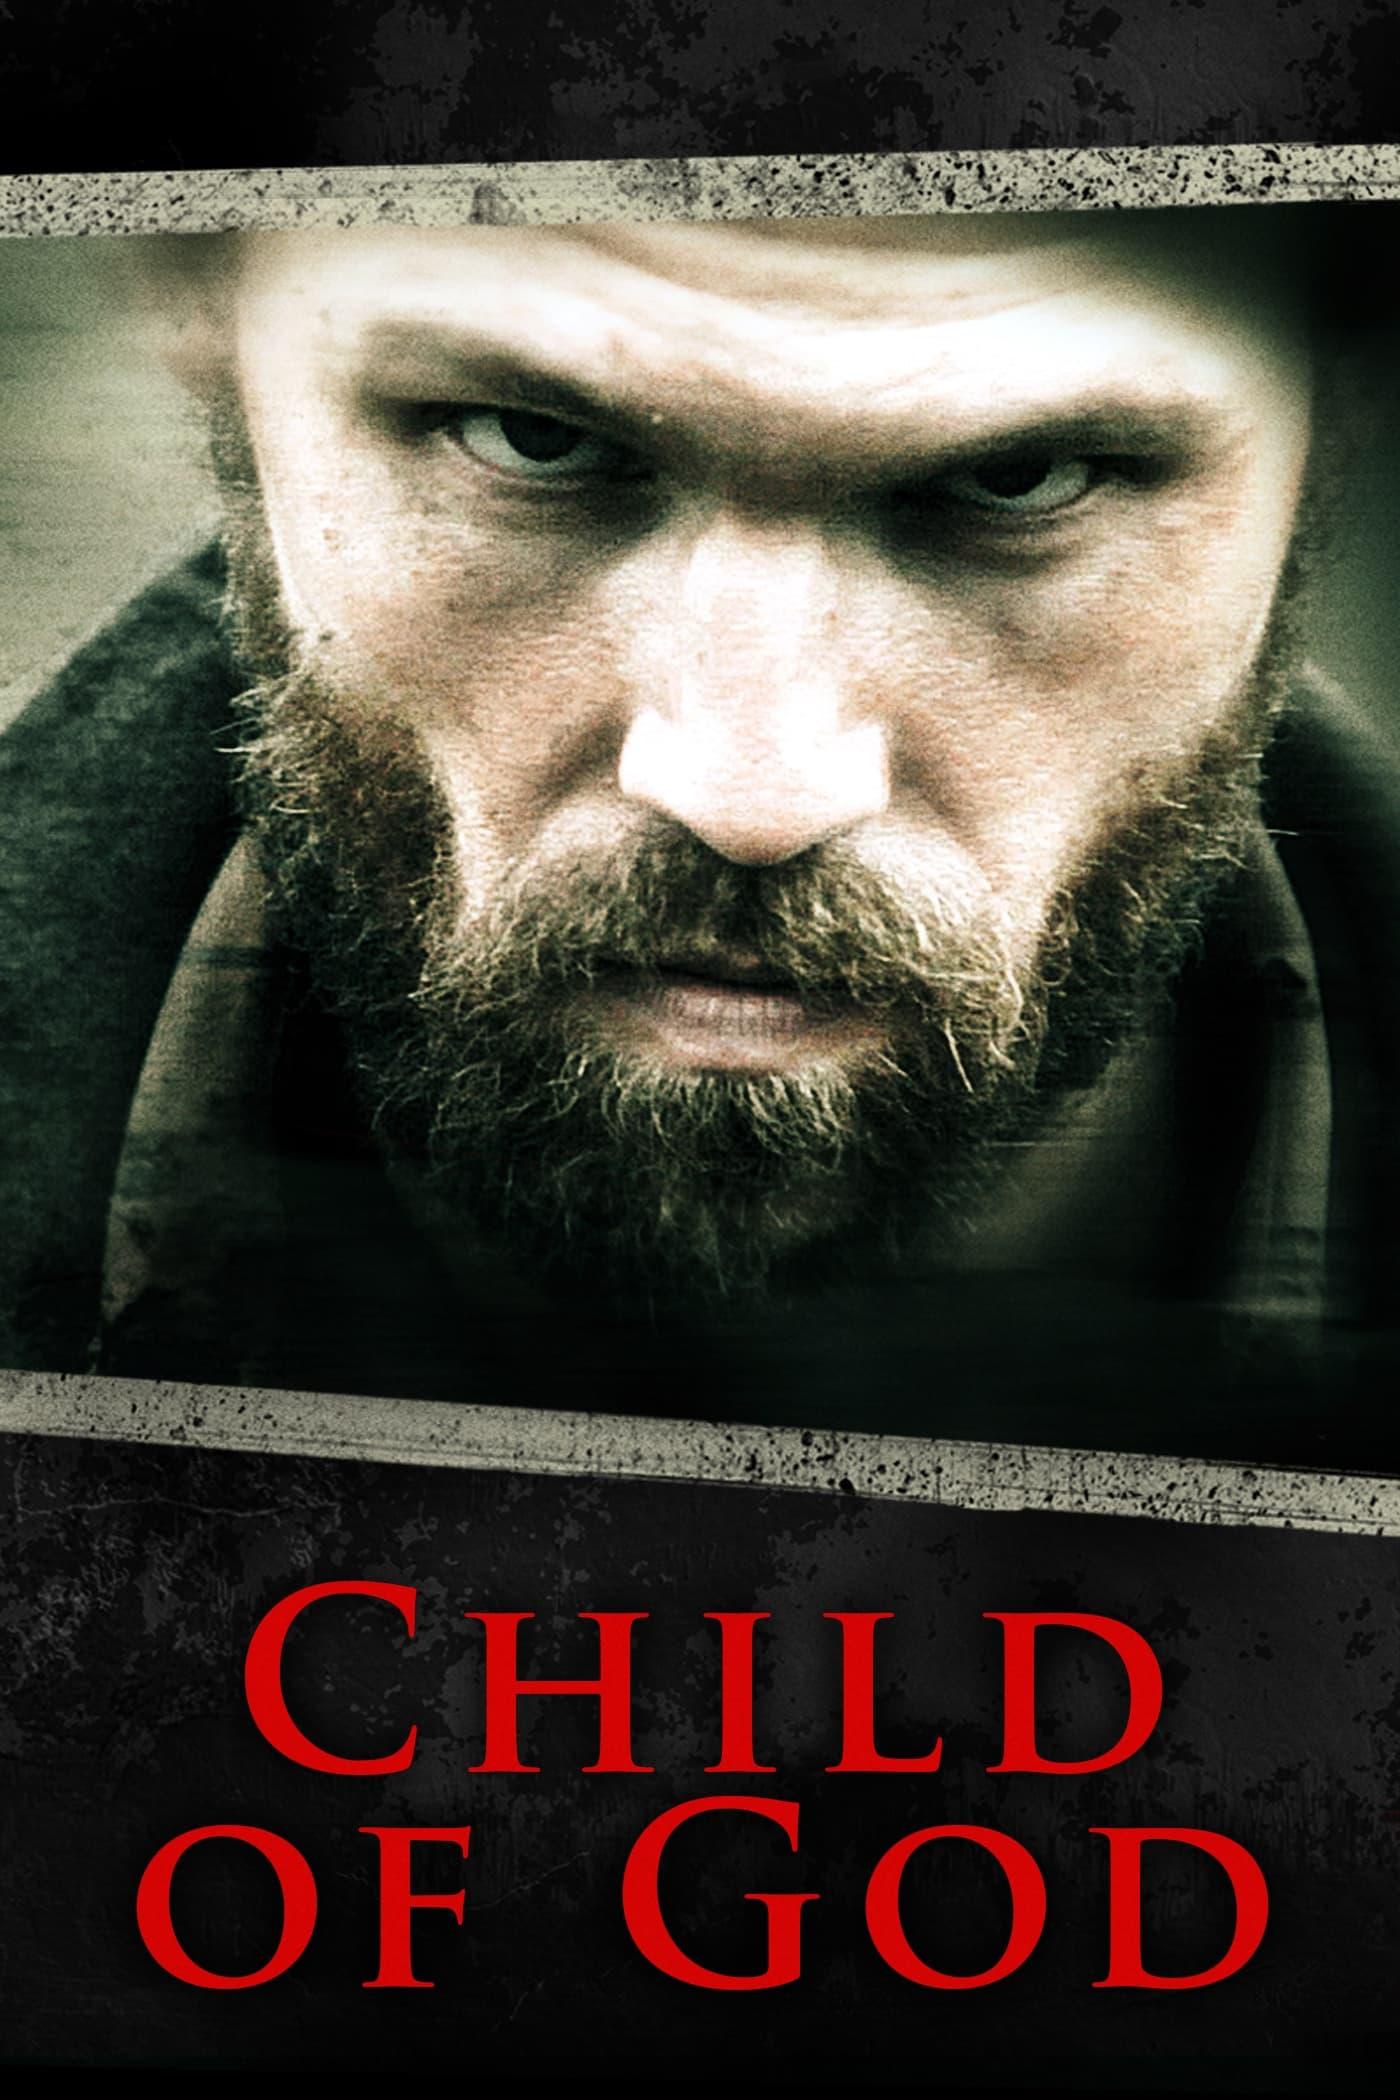 Child of God poster